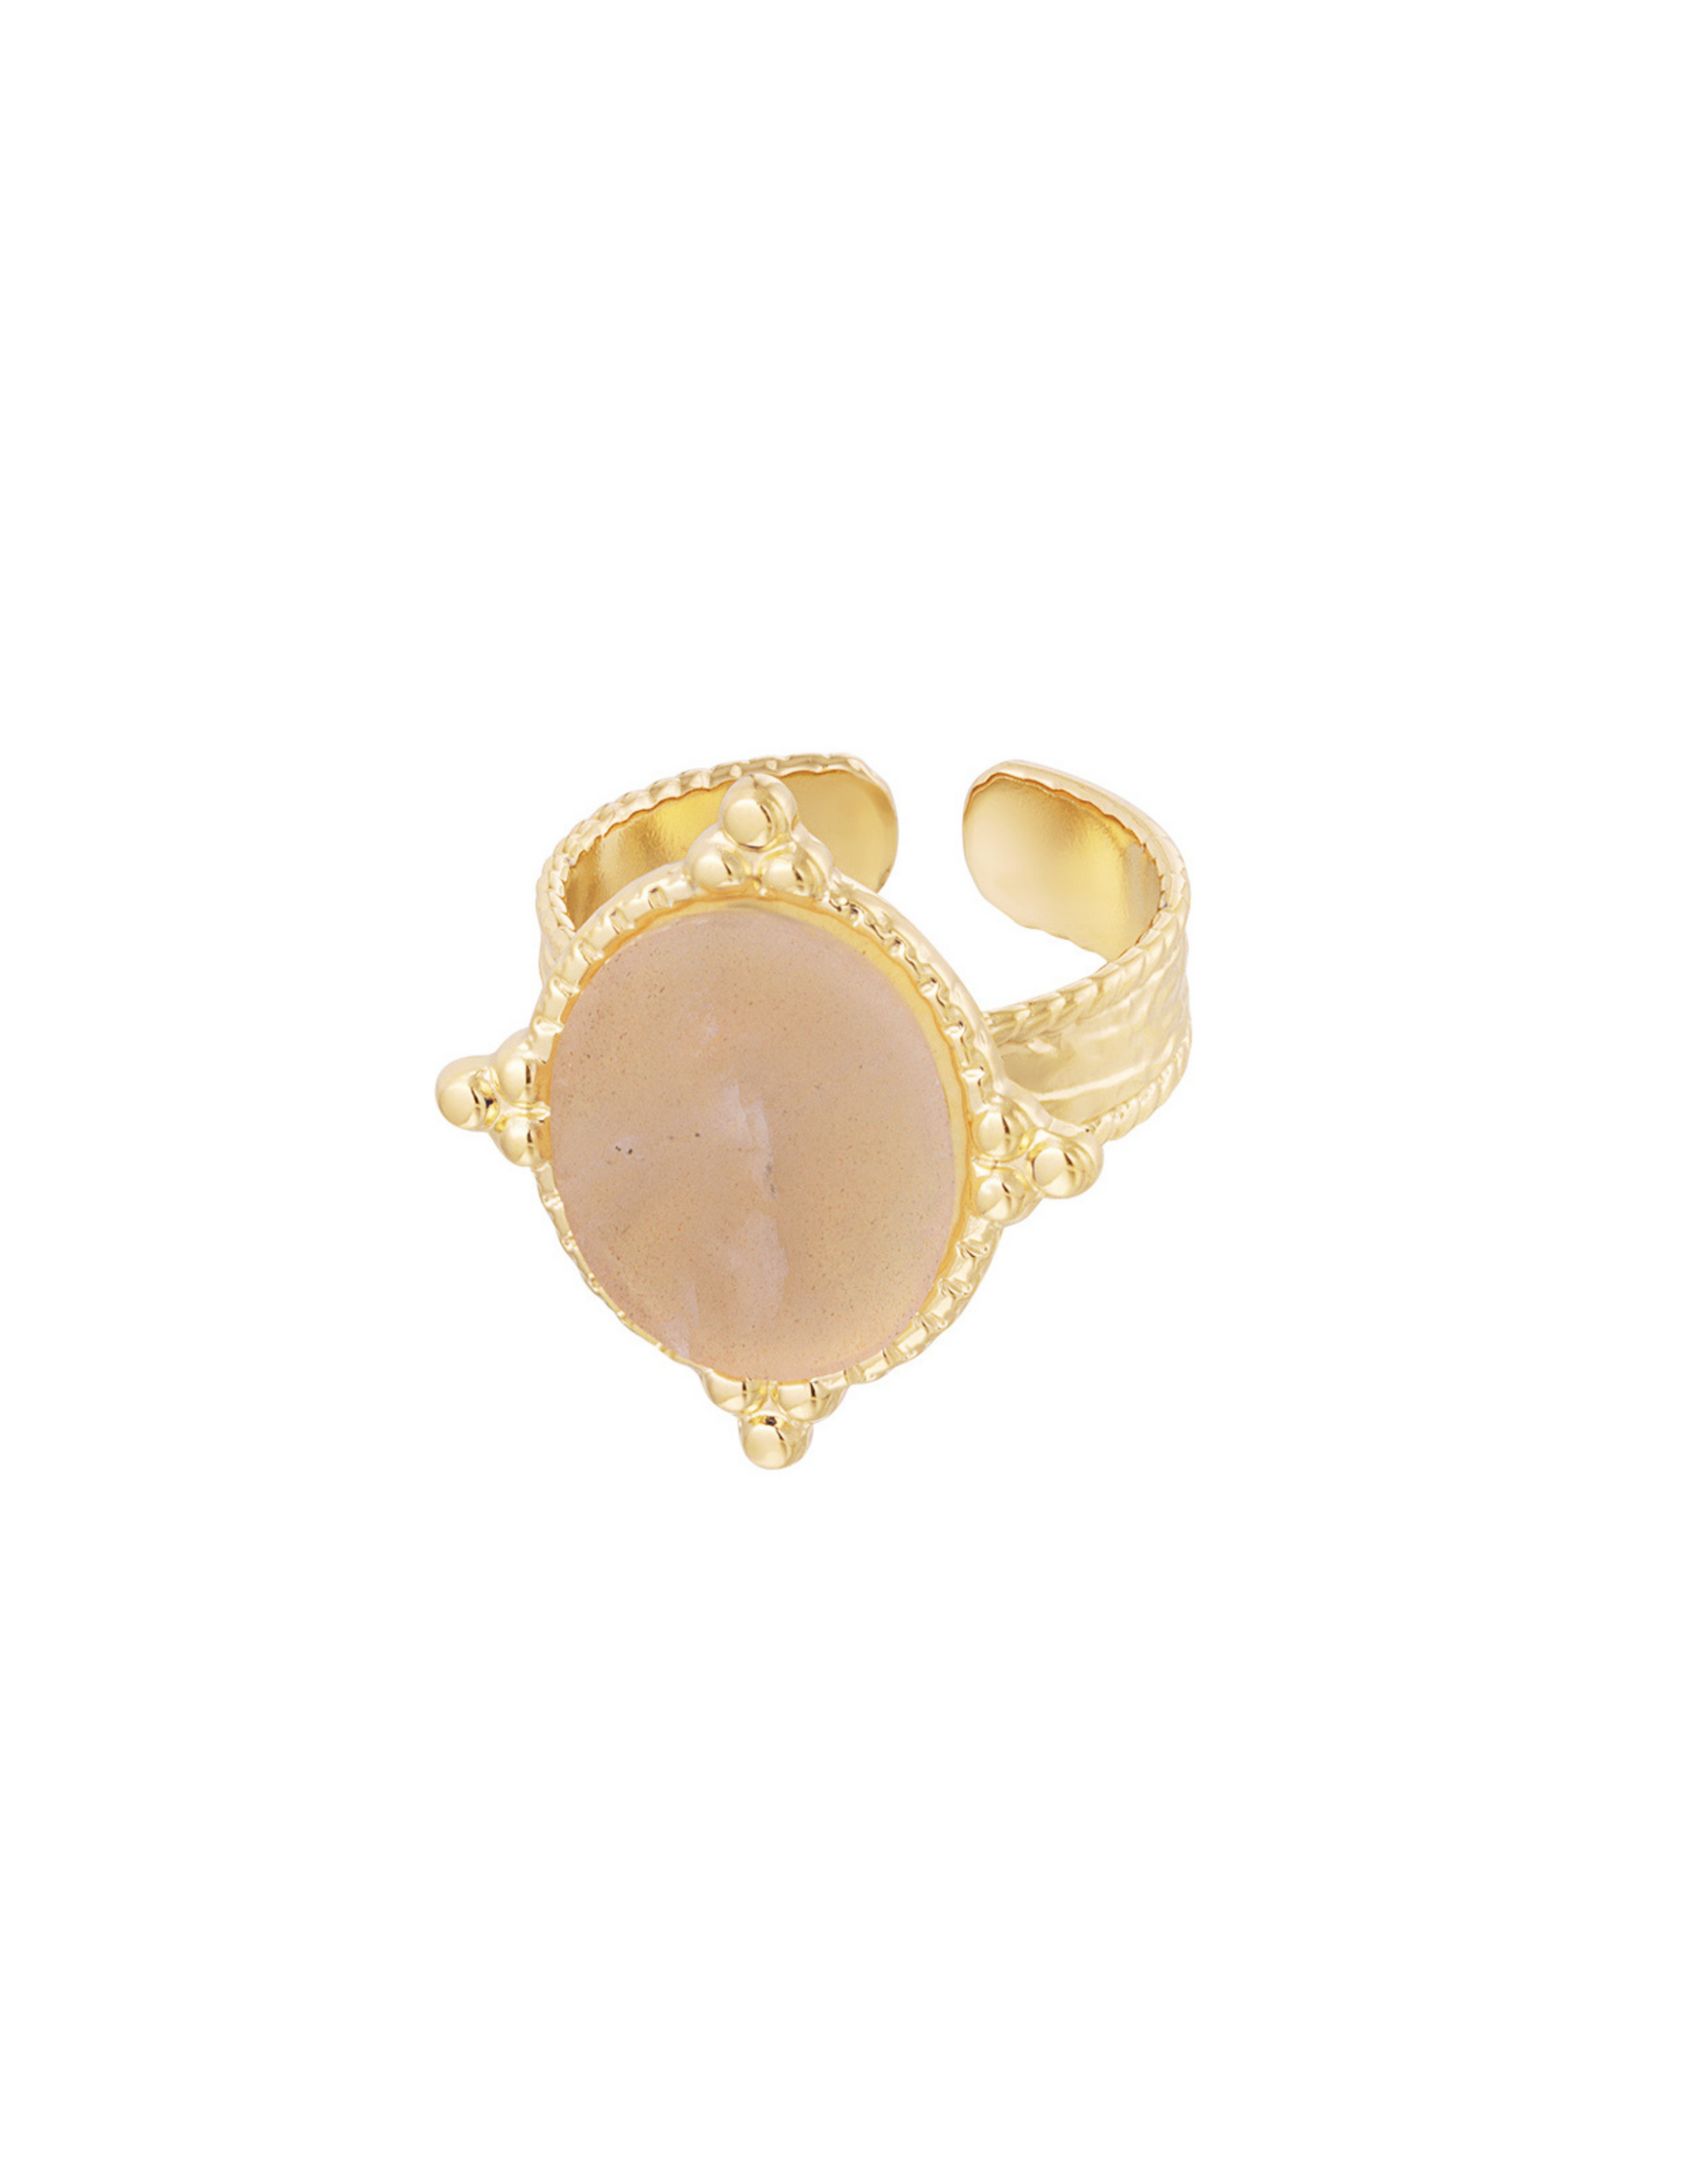 Vores Delara guld ring er med den smukkeste store sten!  Denne ring er til dig, der virkelig elsker, at pifte dit look op med unikke smykker.  Alle vores ringe er justerbare og kan derfor passes af alle. Materiale: Overfladebehandlet rustfri stål, 14 karat guldbelægning, sten. 100% nikkelfri Størrelse: Justerbar